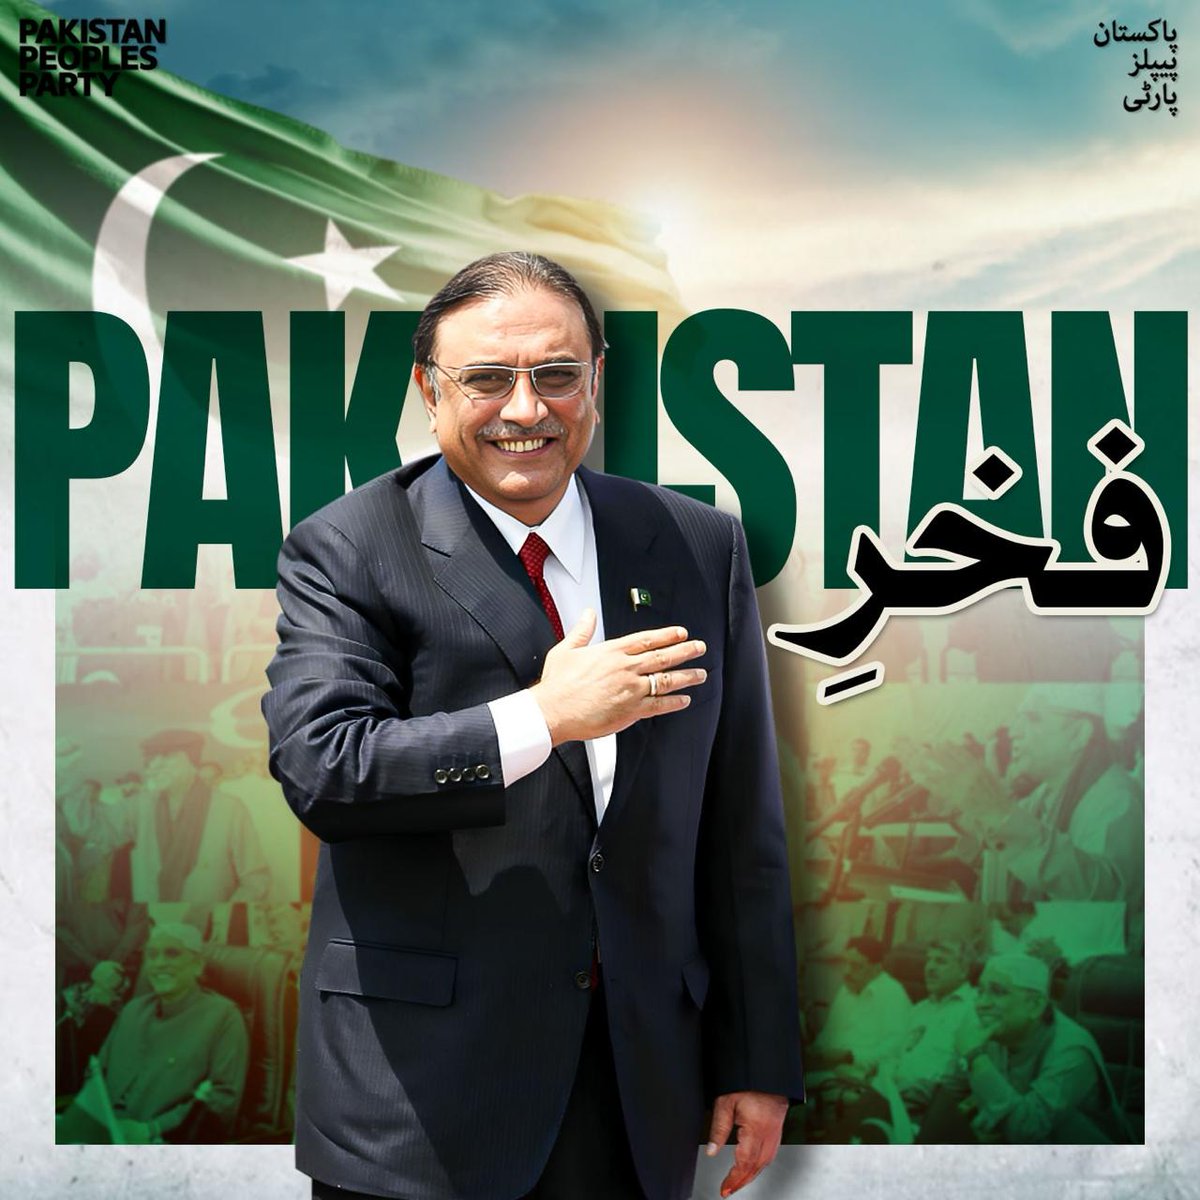 مفاہمت، مثبت سیاست اور خوشحالی کا نشان فخرِ پاکستان صدر آصف علی زرداری #VoteForPresidentZardari